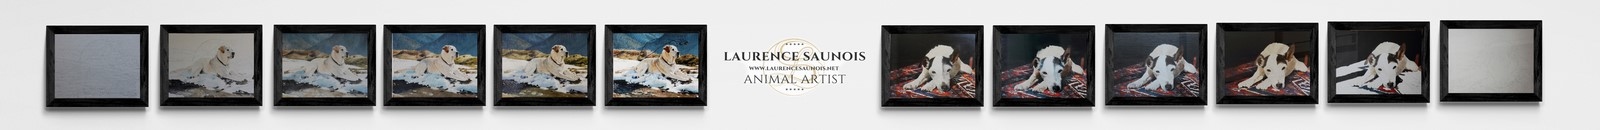 Etapes de réalisation des peintures de la peintre animalier Laurence Saunois